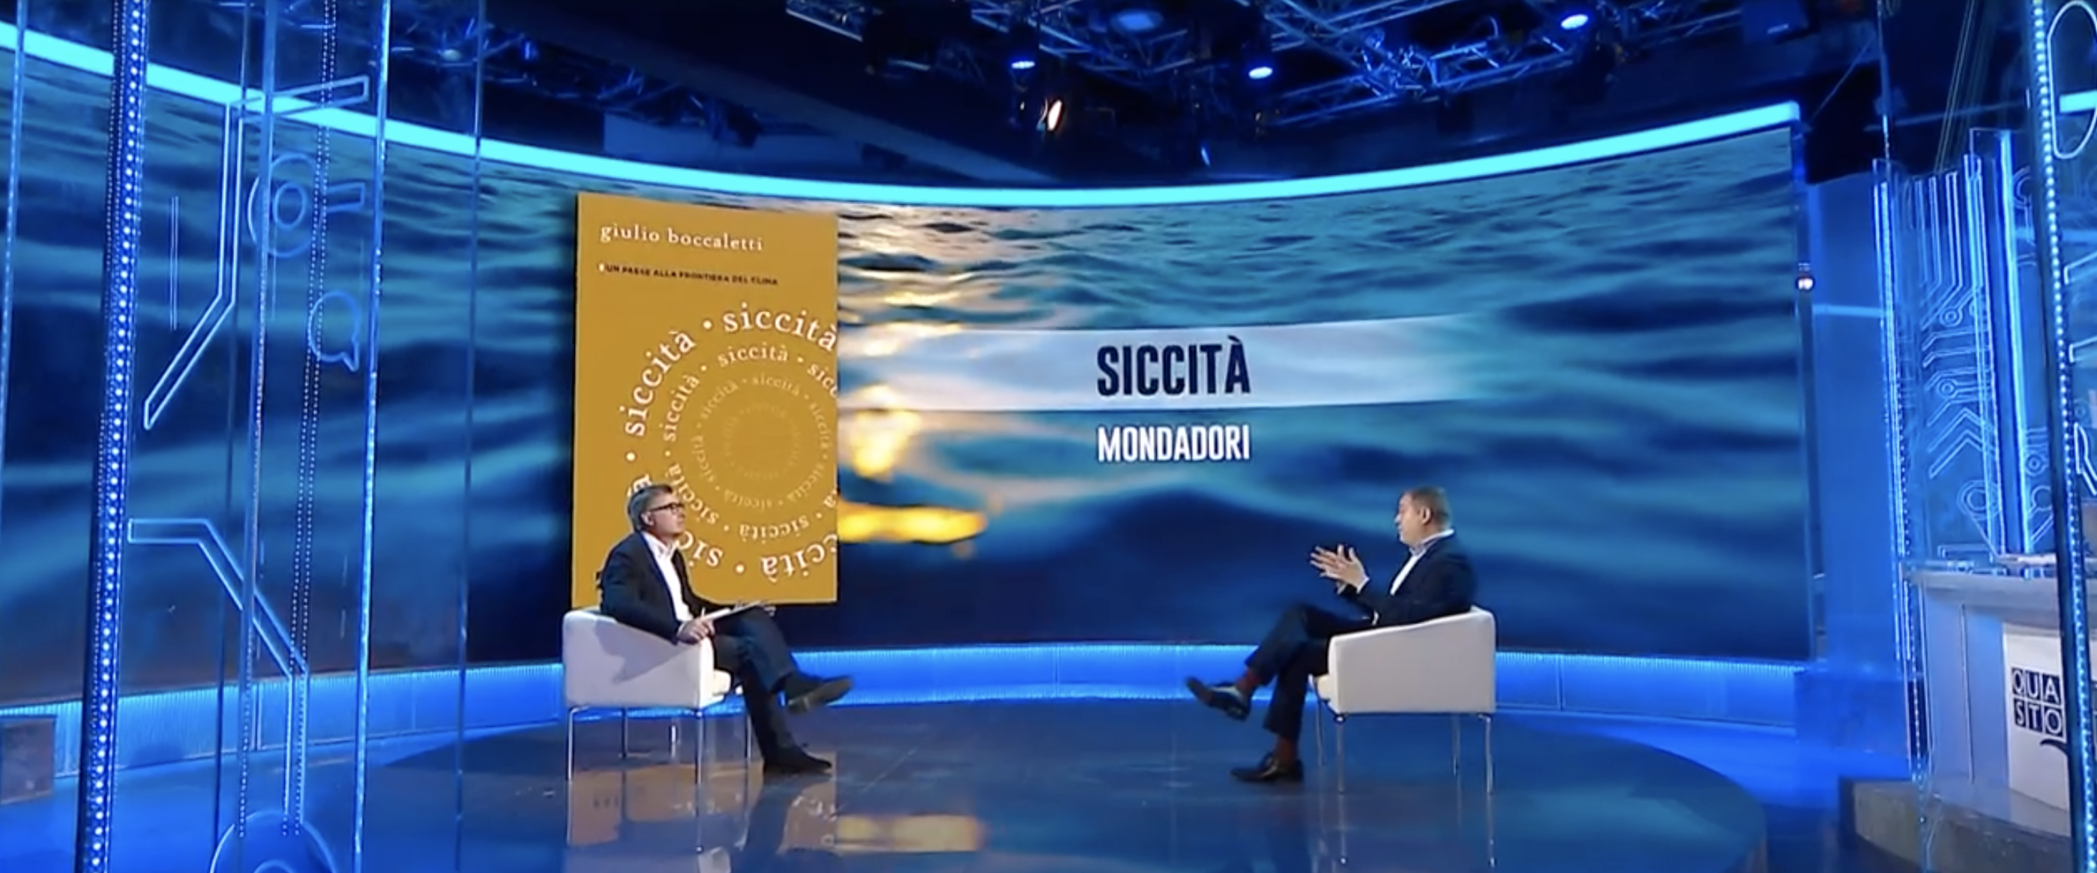 Extreme events: Giulio Boccaletti presents his latest book “Siccità” on Italian TV